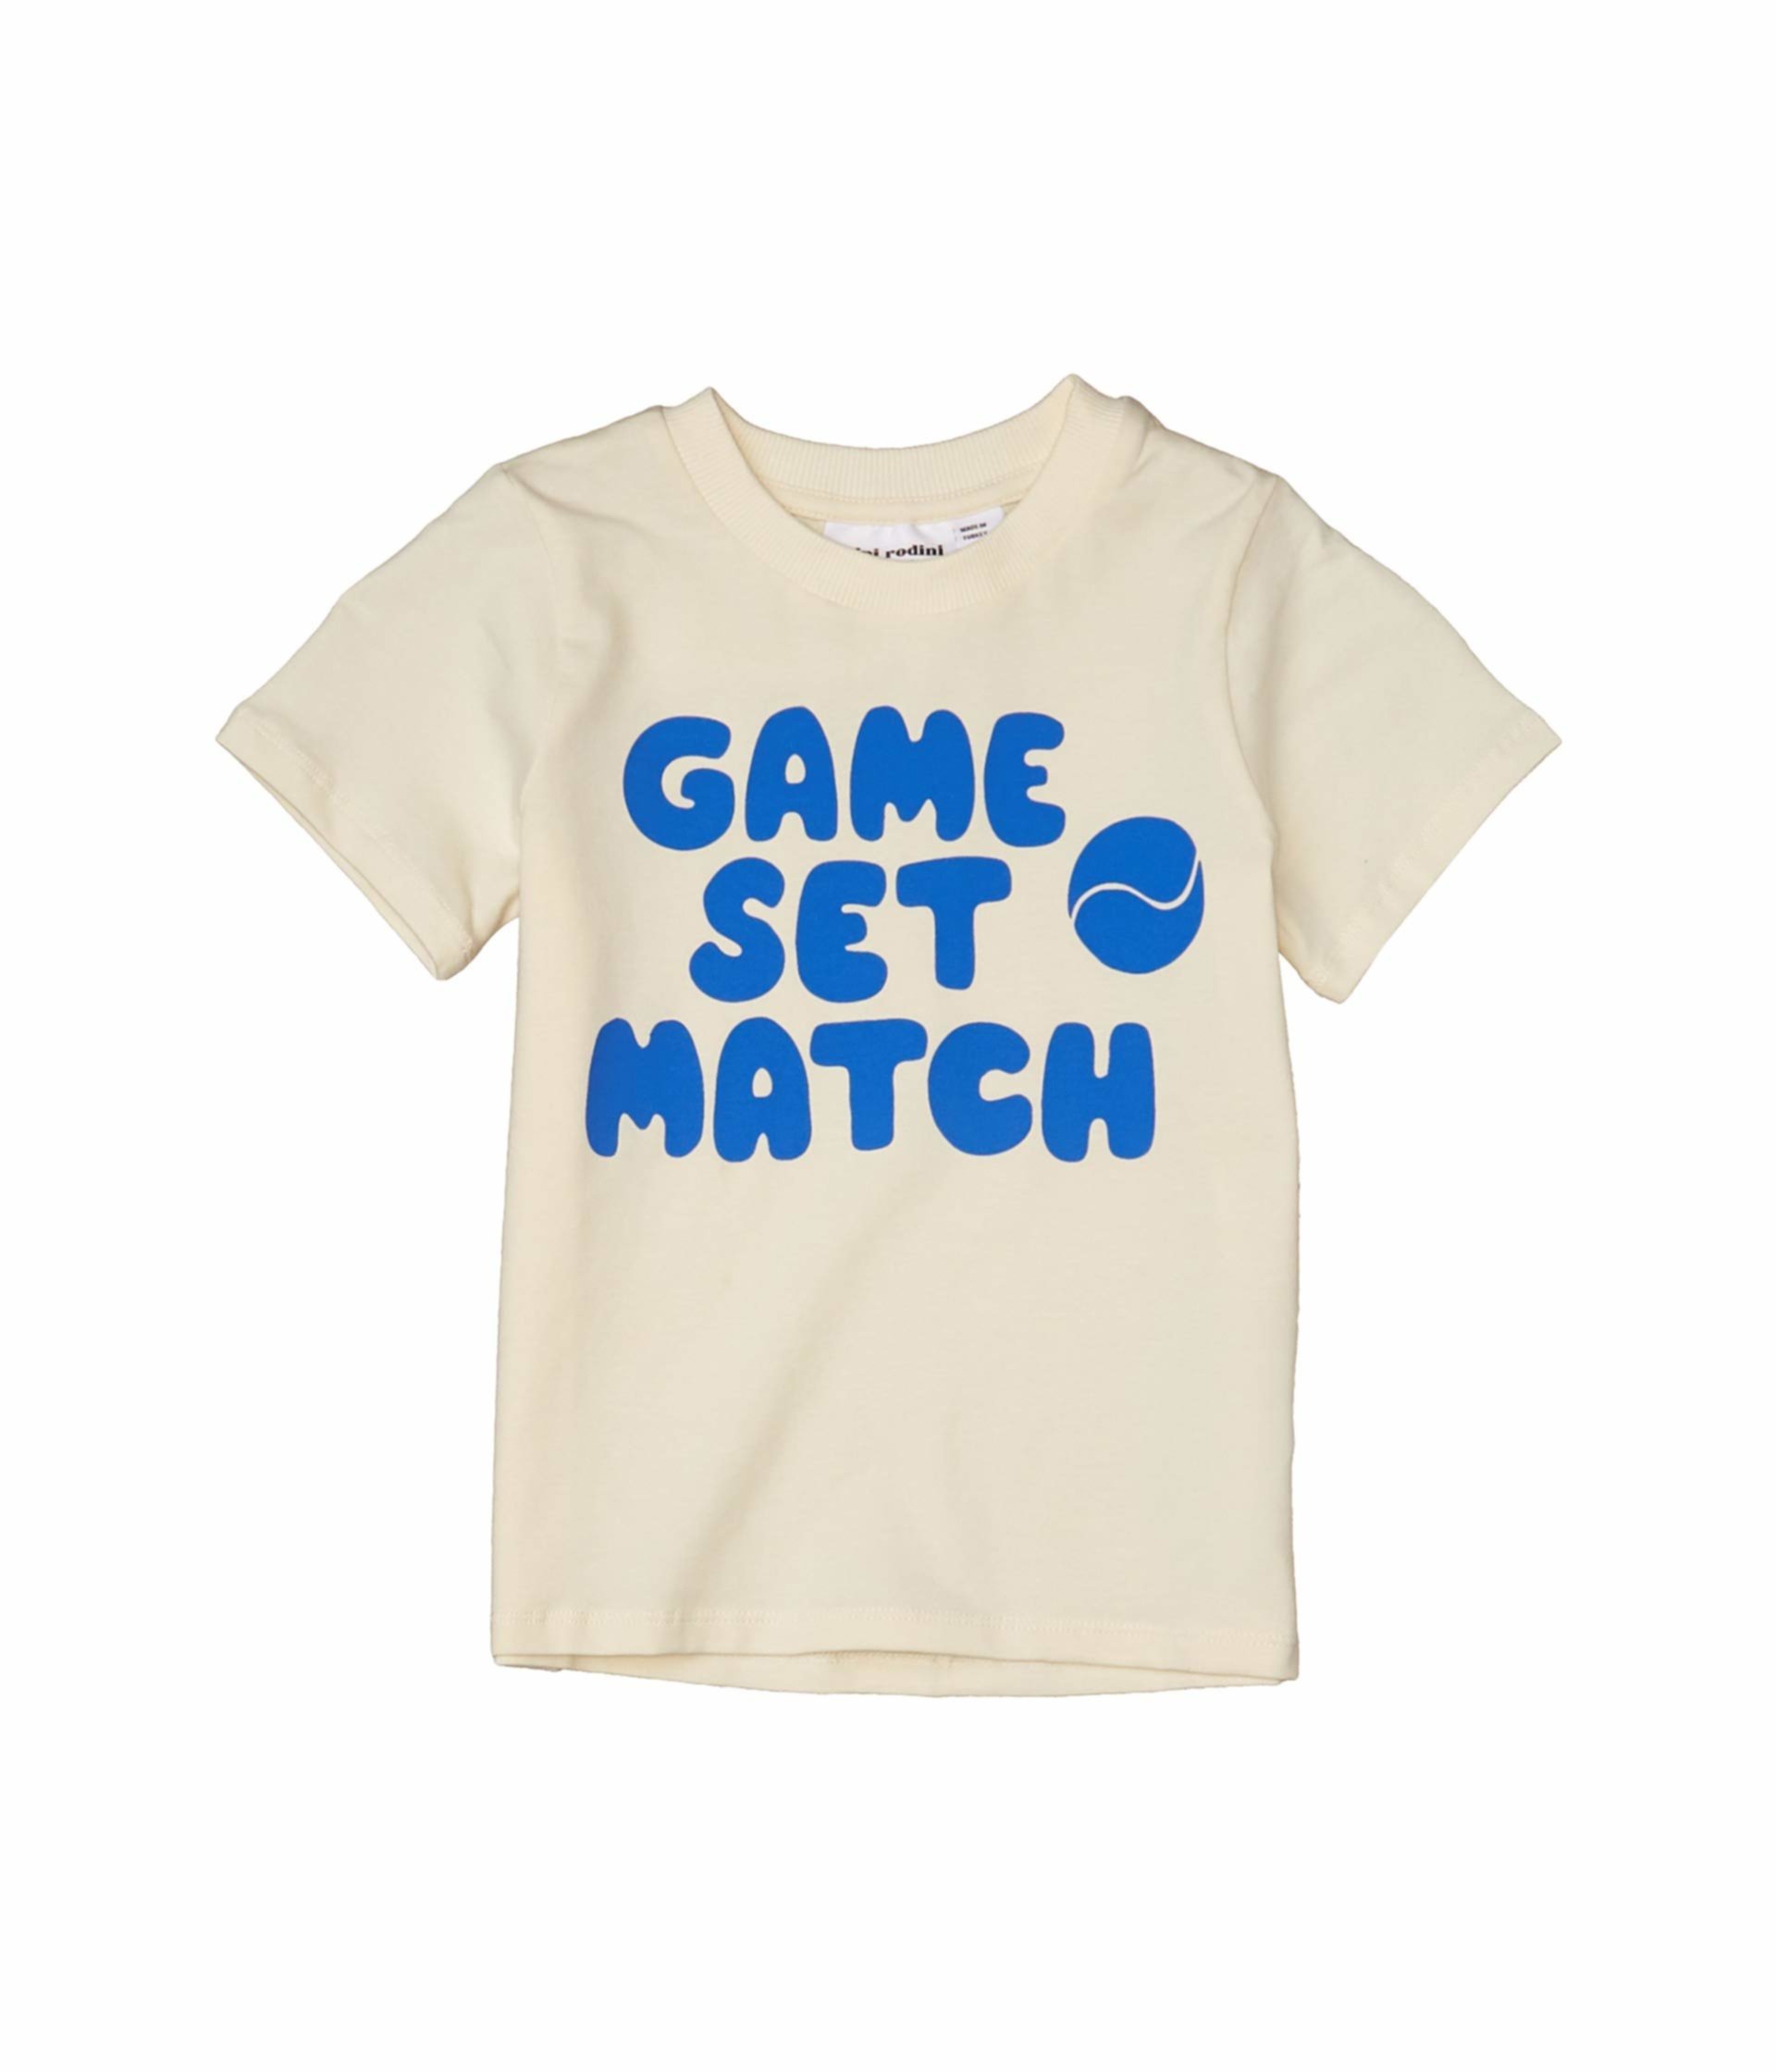 Игровая футболка с одним принтом (младенец / малыш / маленькие дети / большие дети) Mini rodini